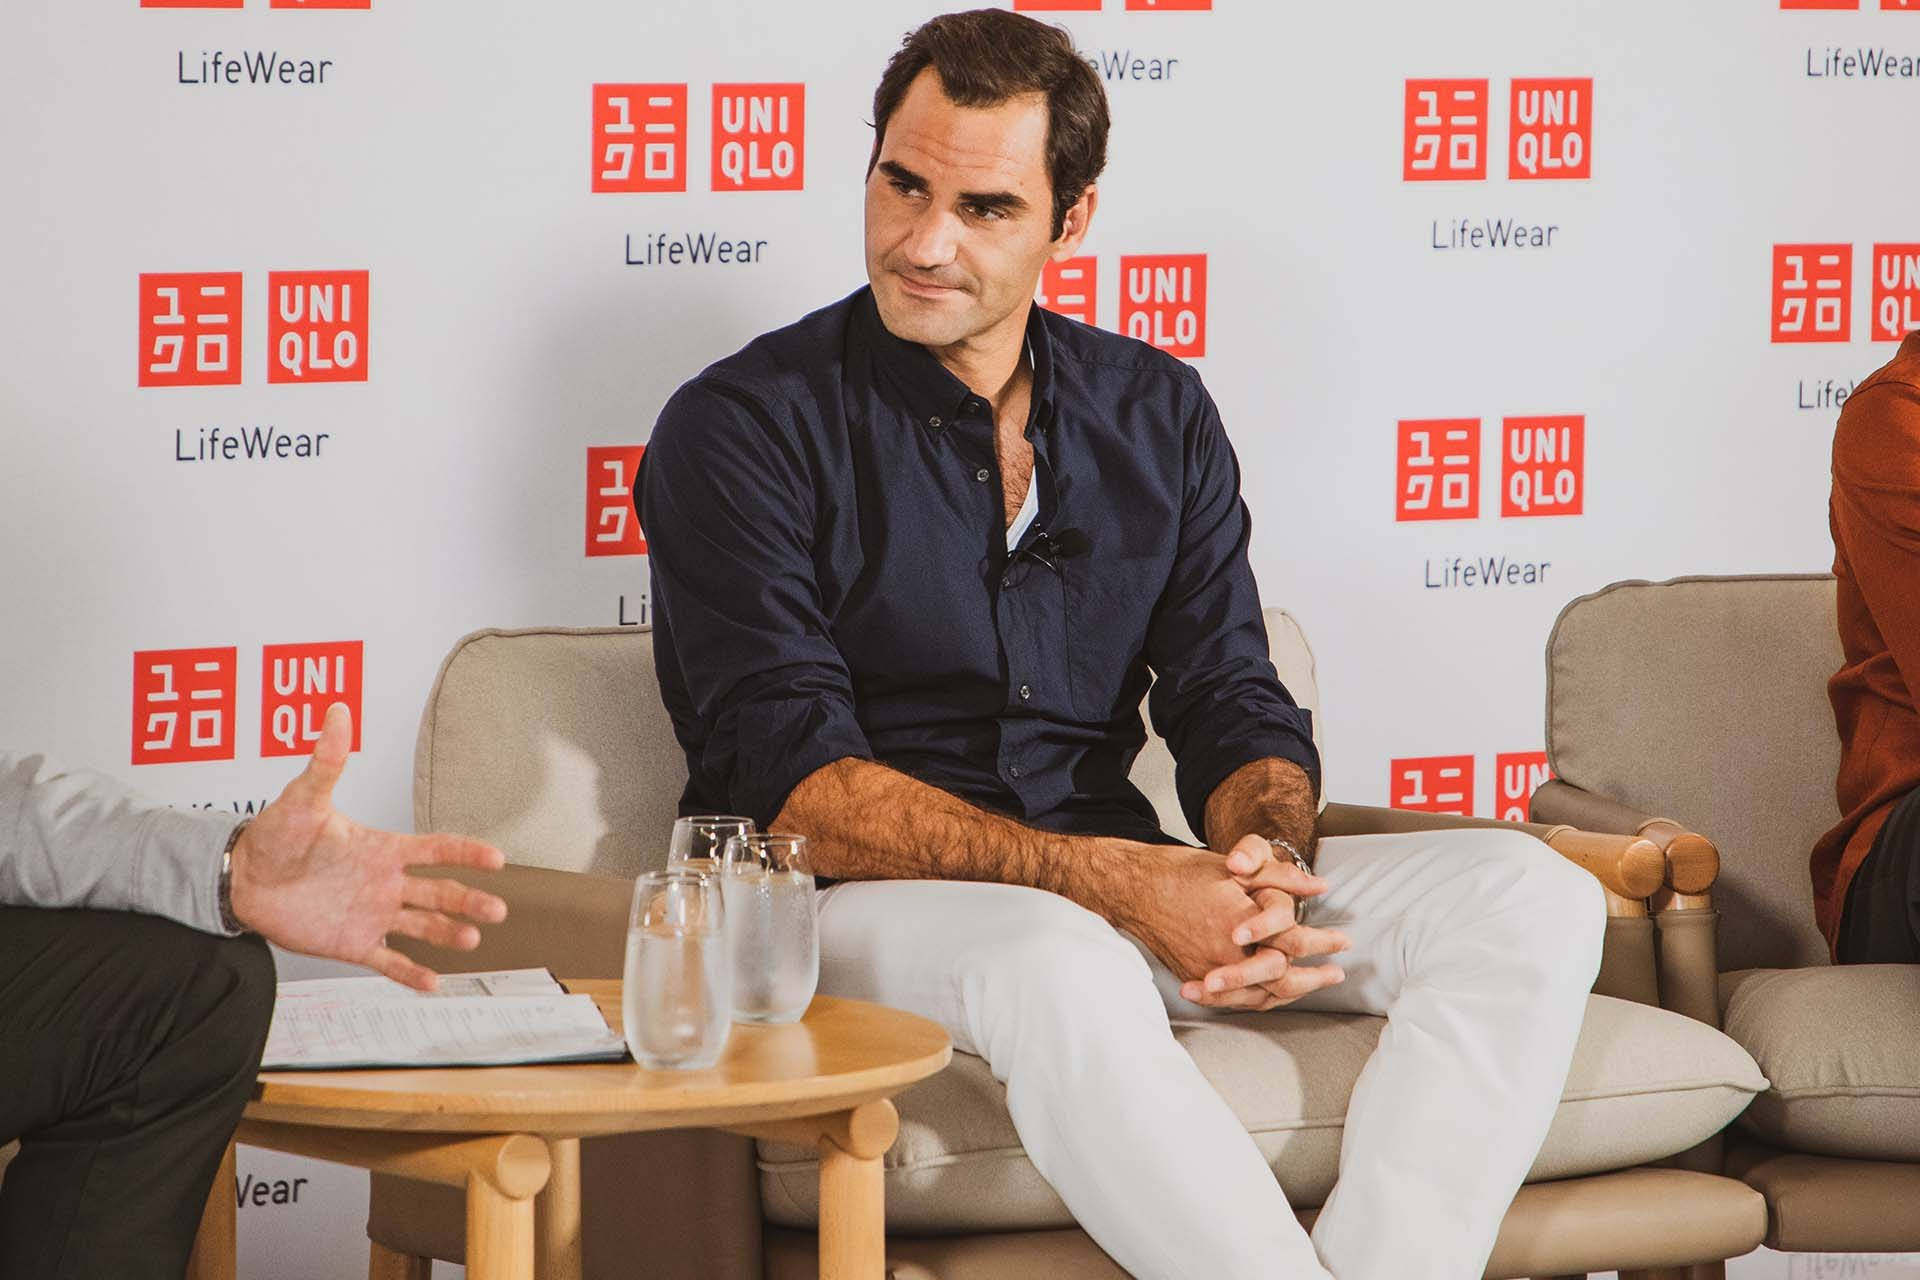 Roger Federer Uniqlo Partnership Background